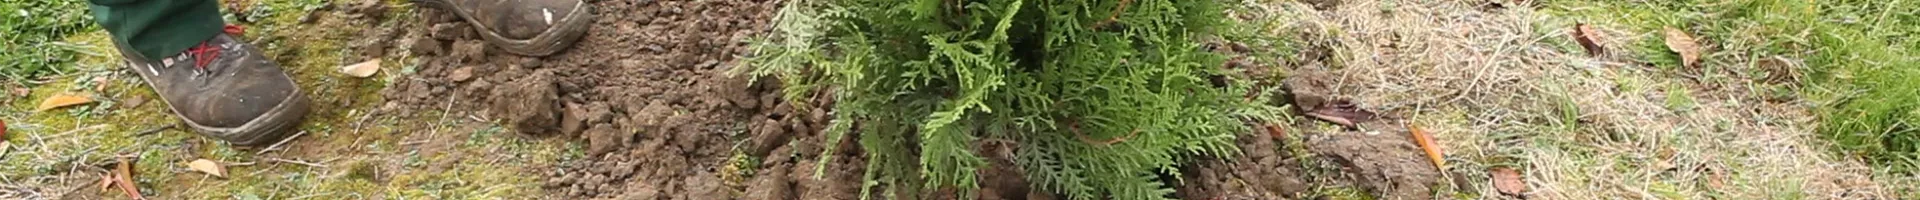 Lebensbaum - Einpflanzen im Garten (thumbnail).jpg